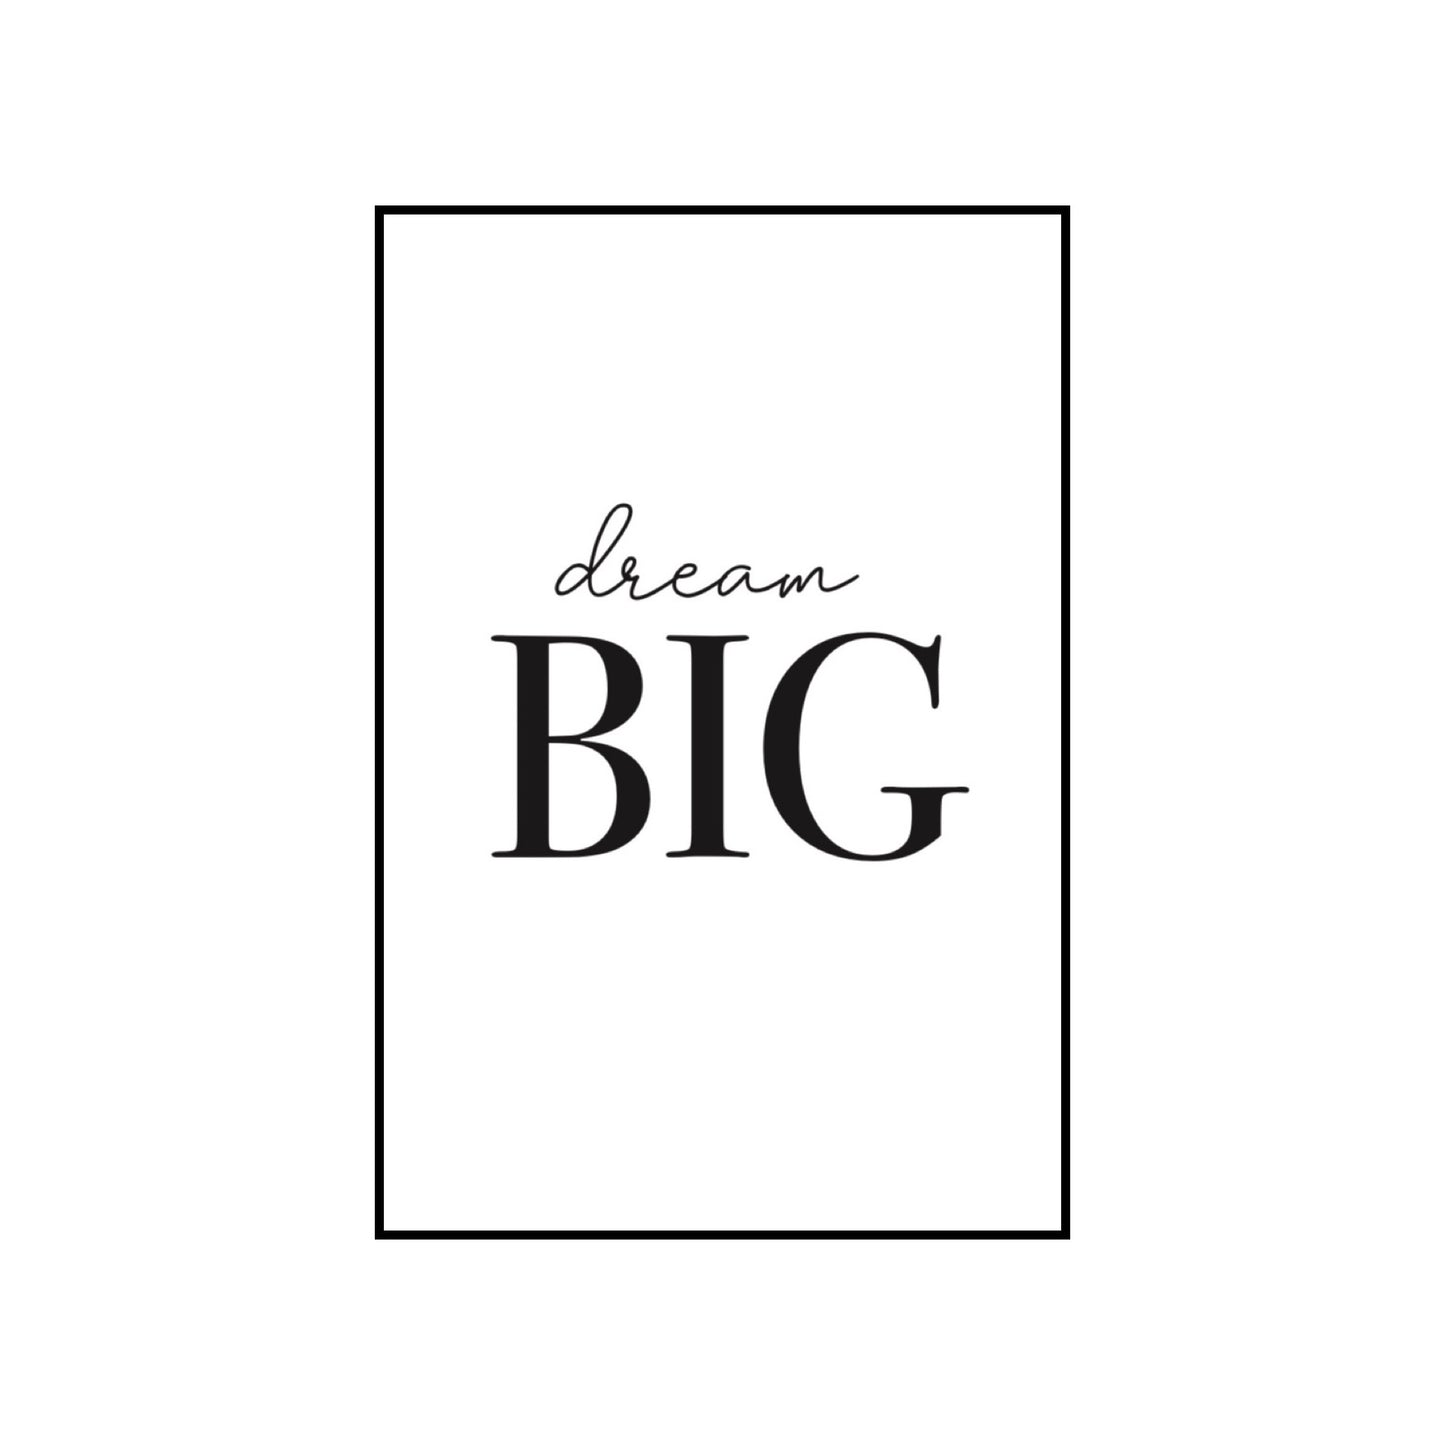 Dream big - THE WALL STYLIST